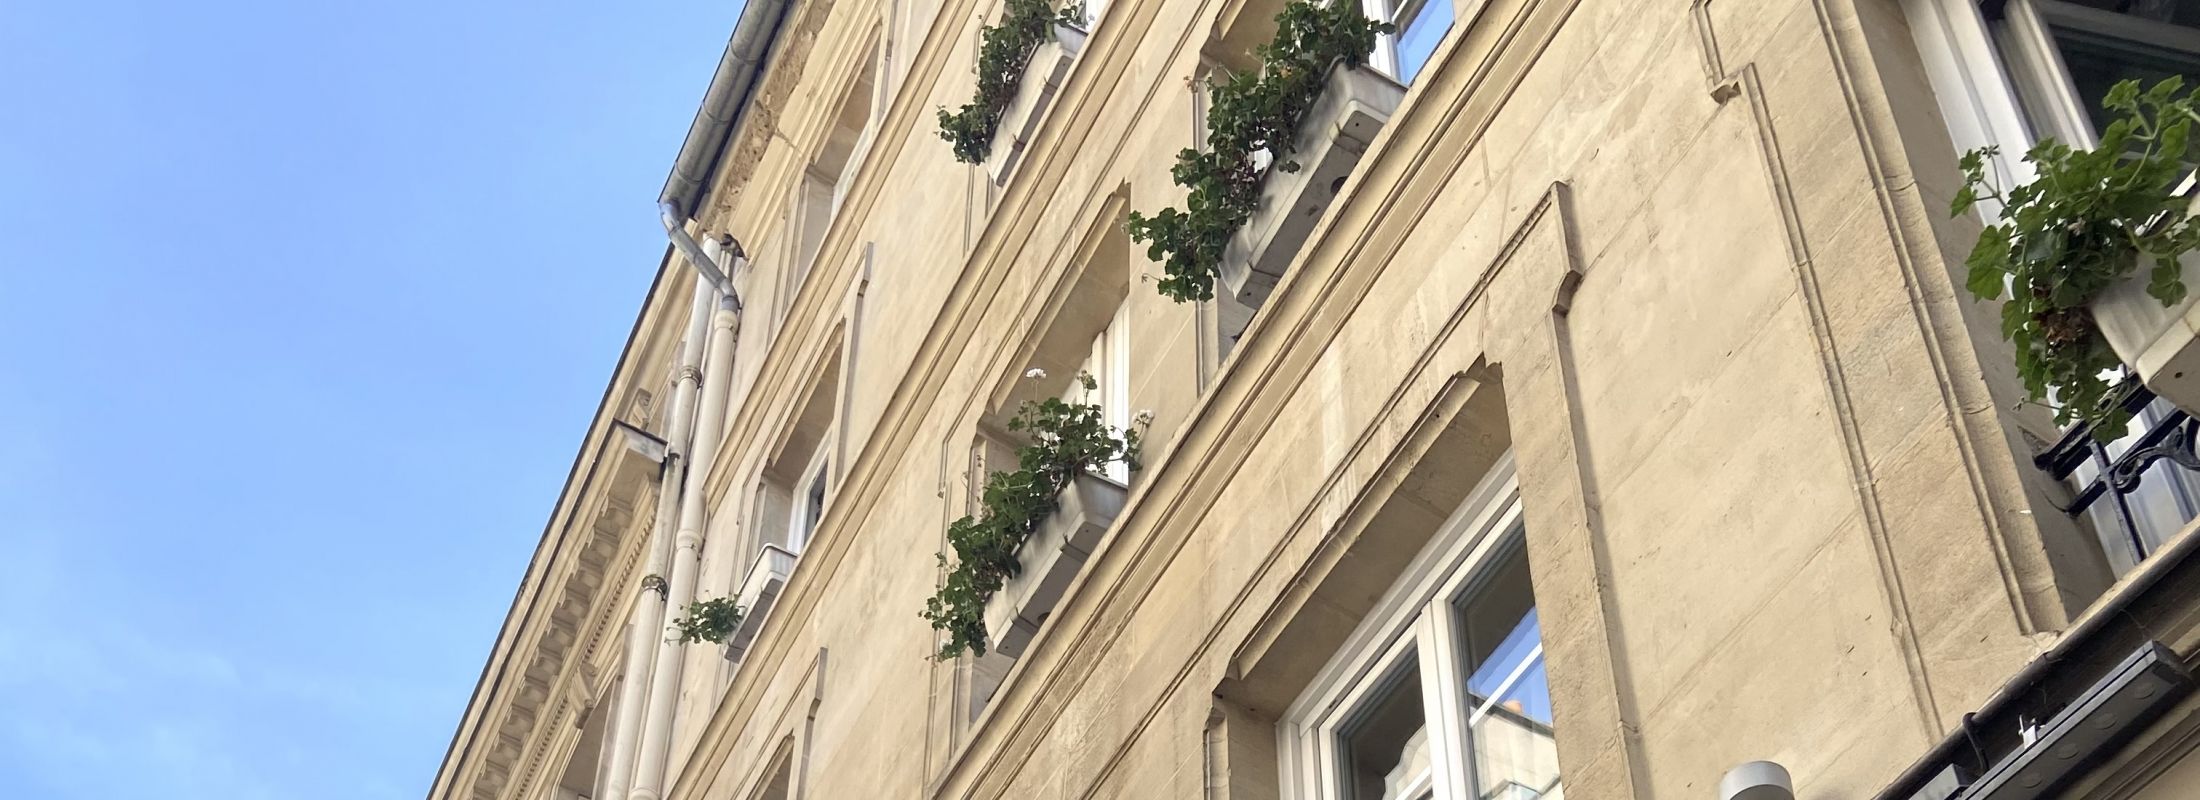 Hotel Central Saint Germain Paris